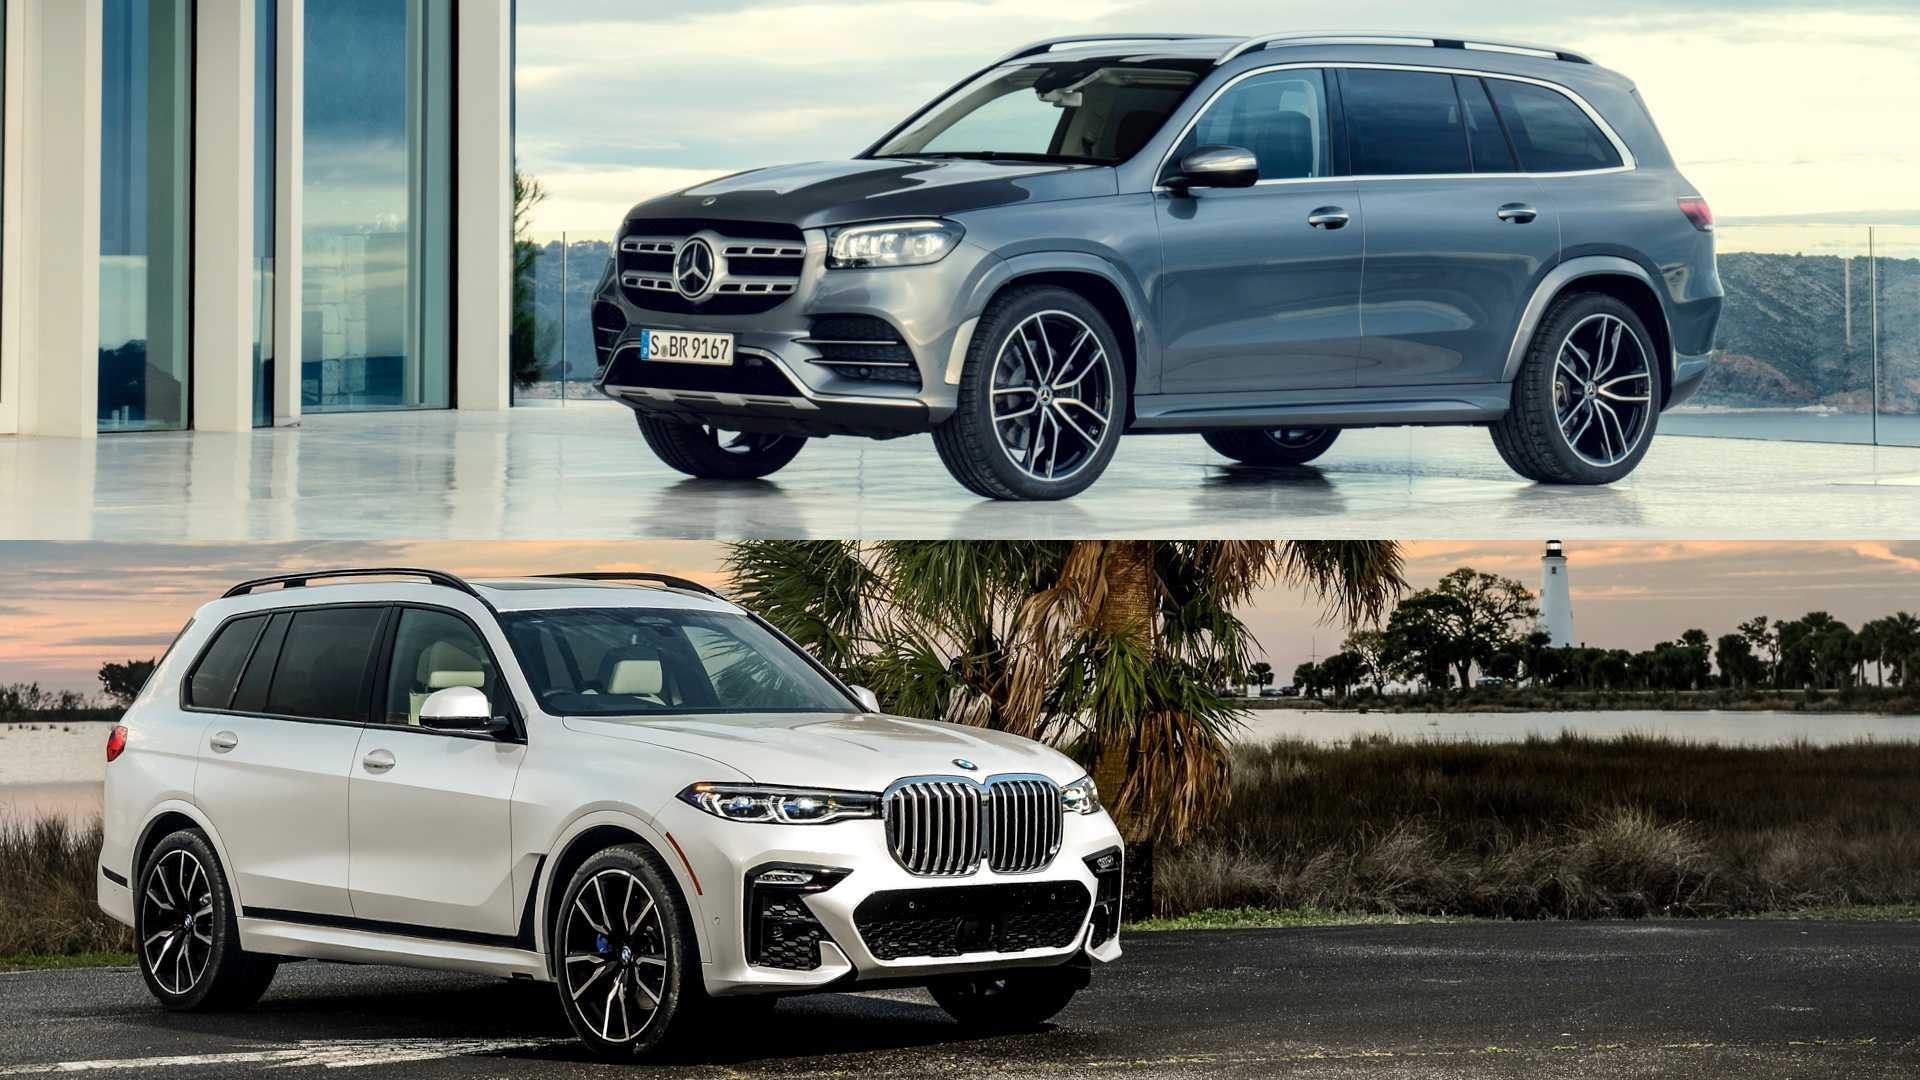 BMW X7 vs Mercedes GLS: Which Luxury SUV Reigns Supreme?